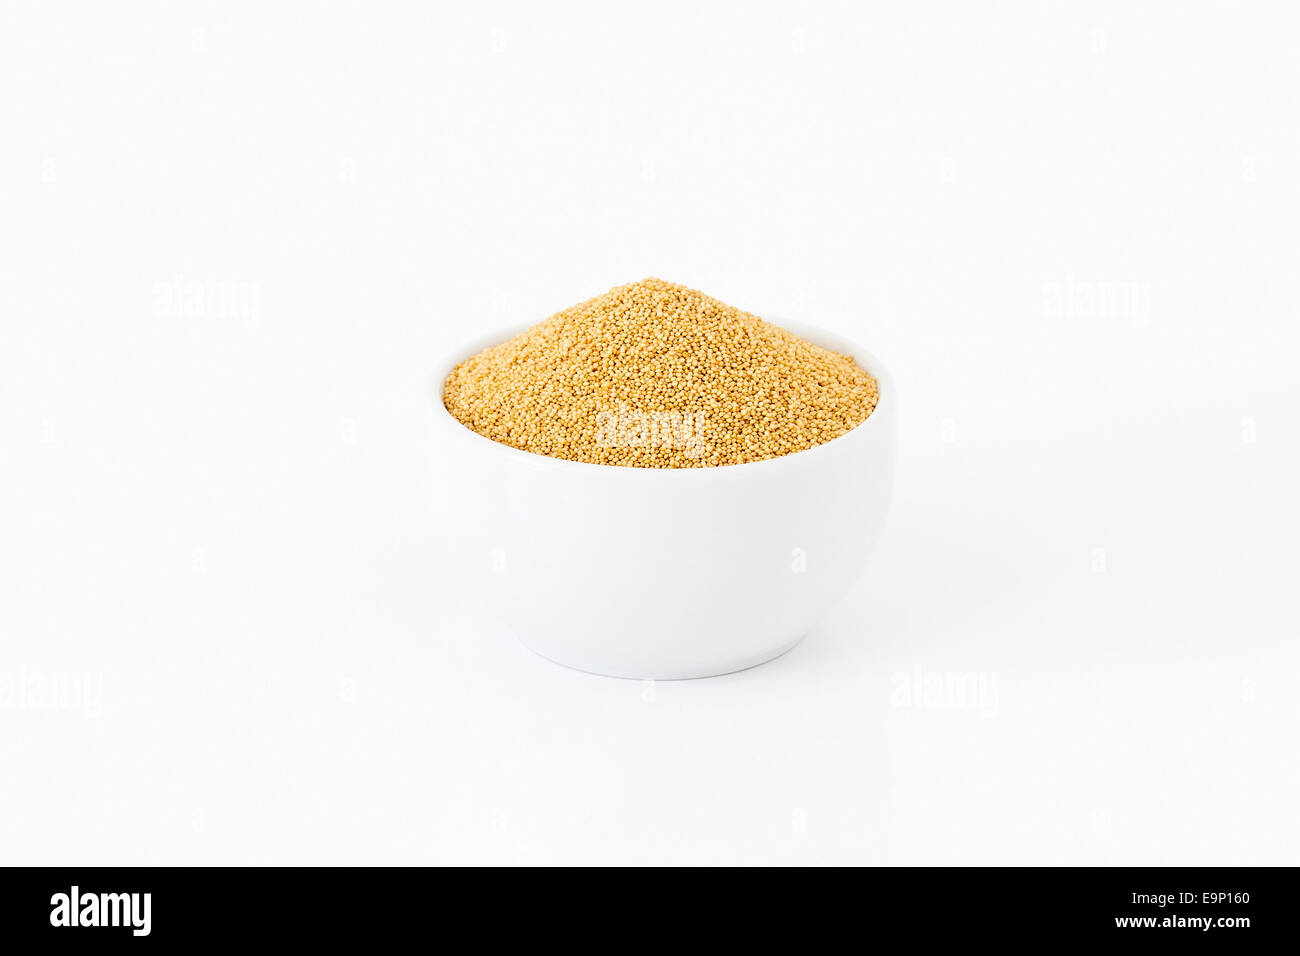 Les graines de quinoa sur fond blanc Banque D'Images